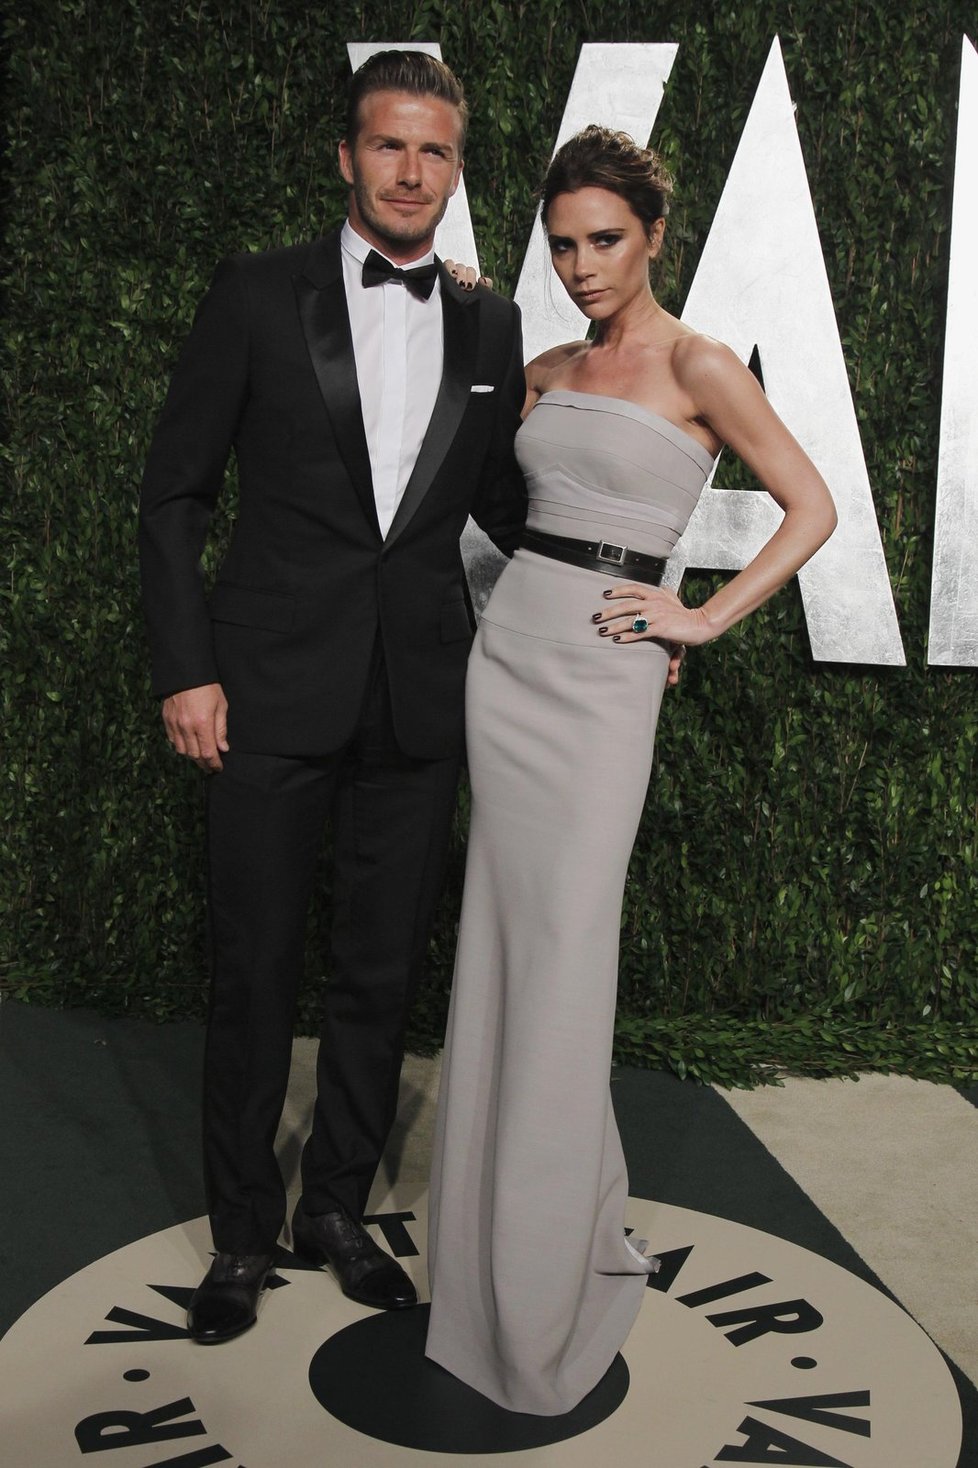 Victoria a David Beckhamovi patří k nejbohatším párům světa.